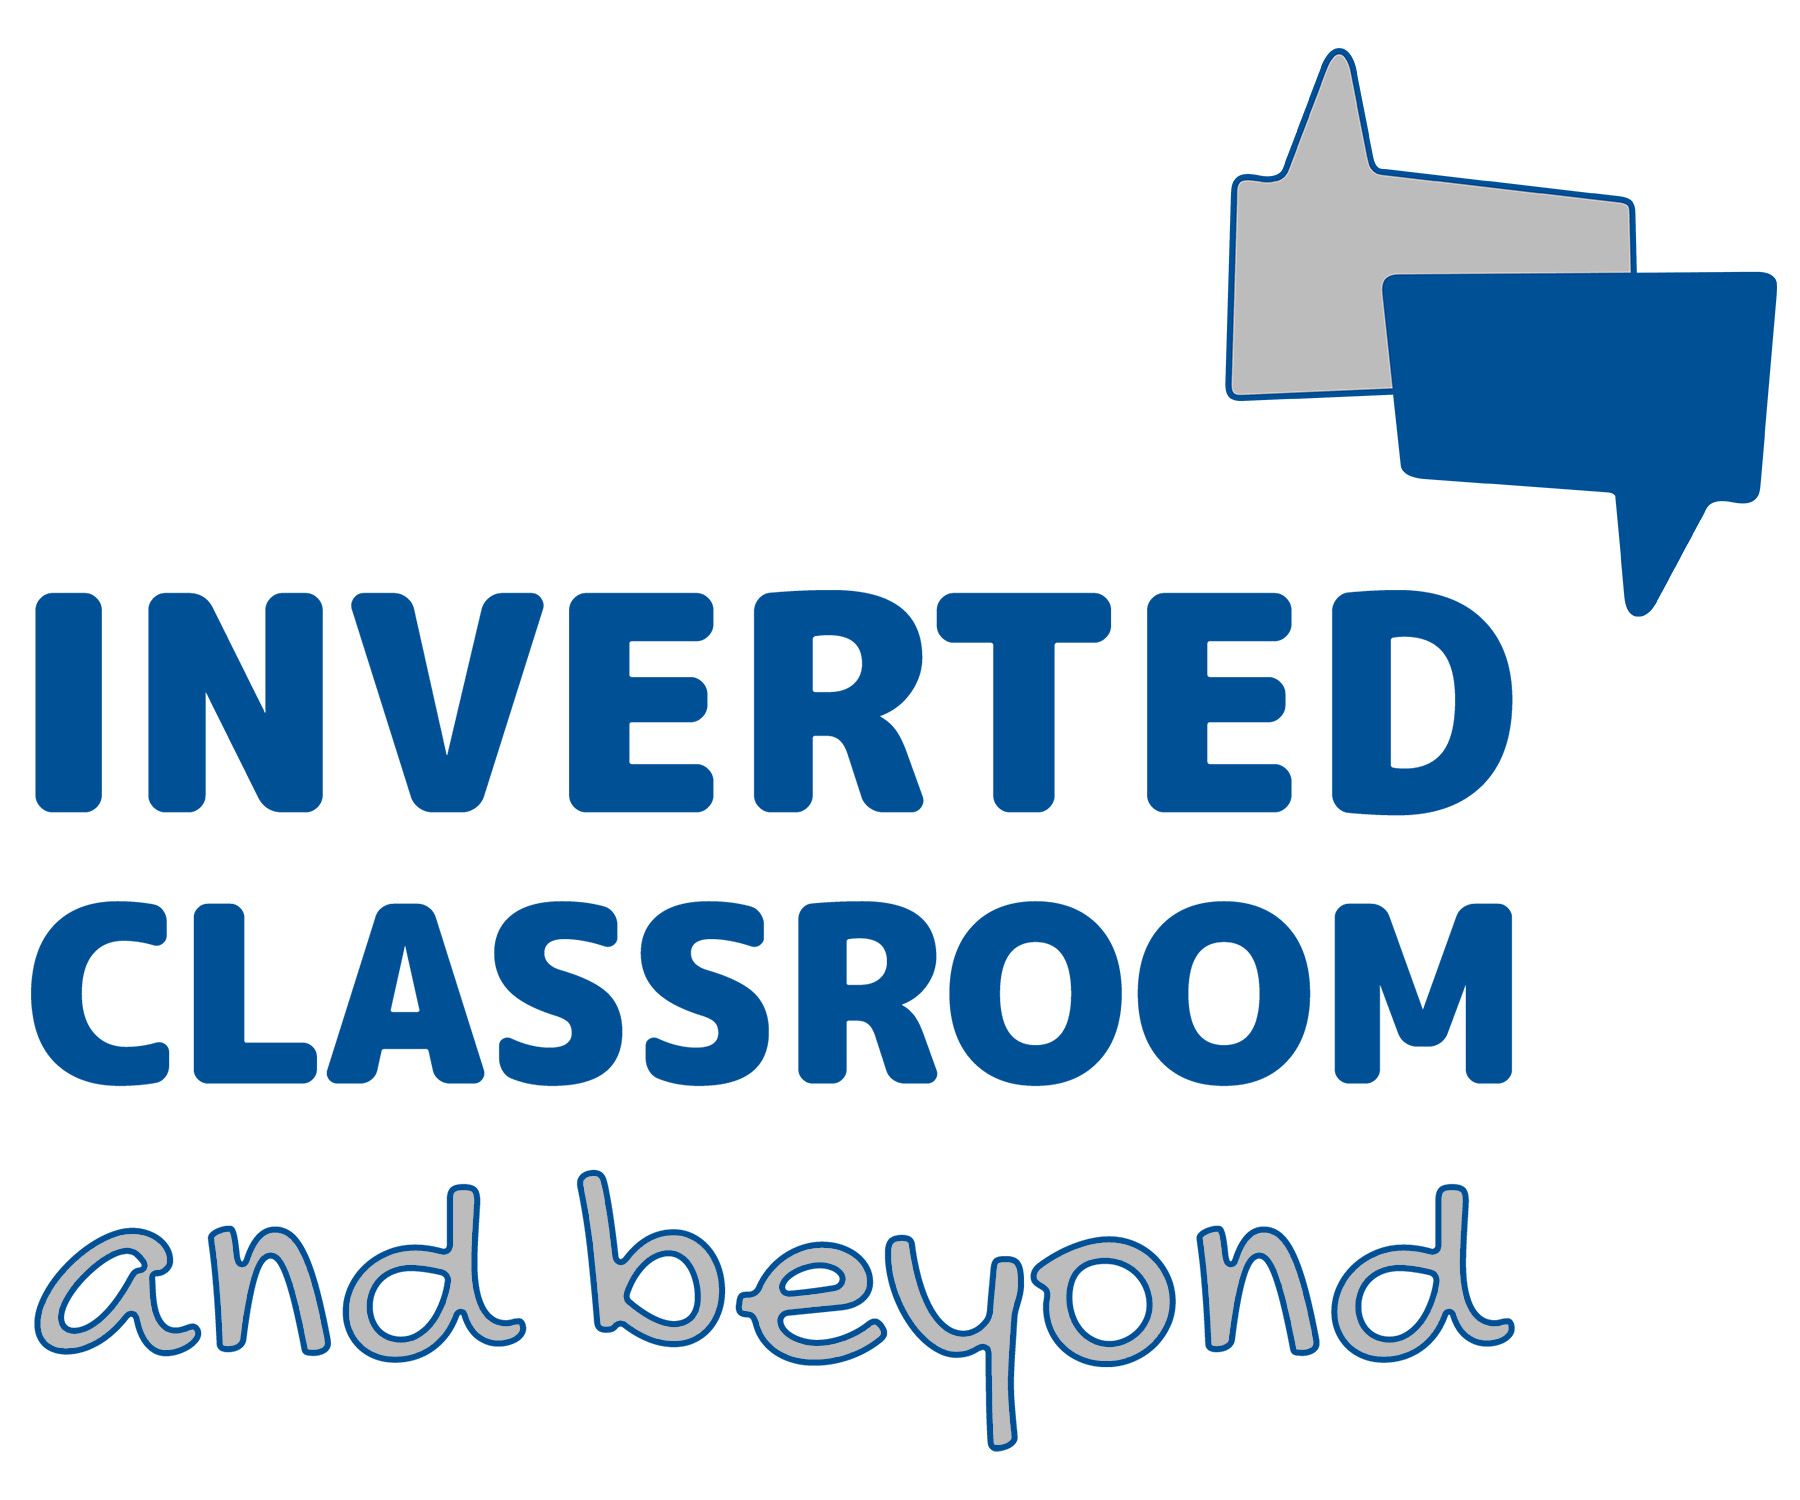 Tag der Lehre / Konferenz Inverted Classroom and Beyond